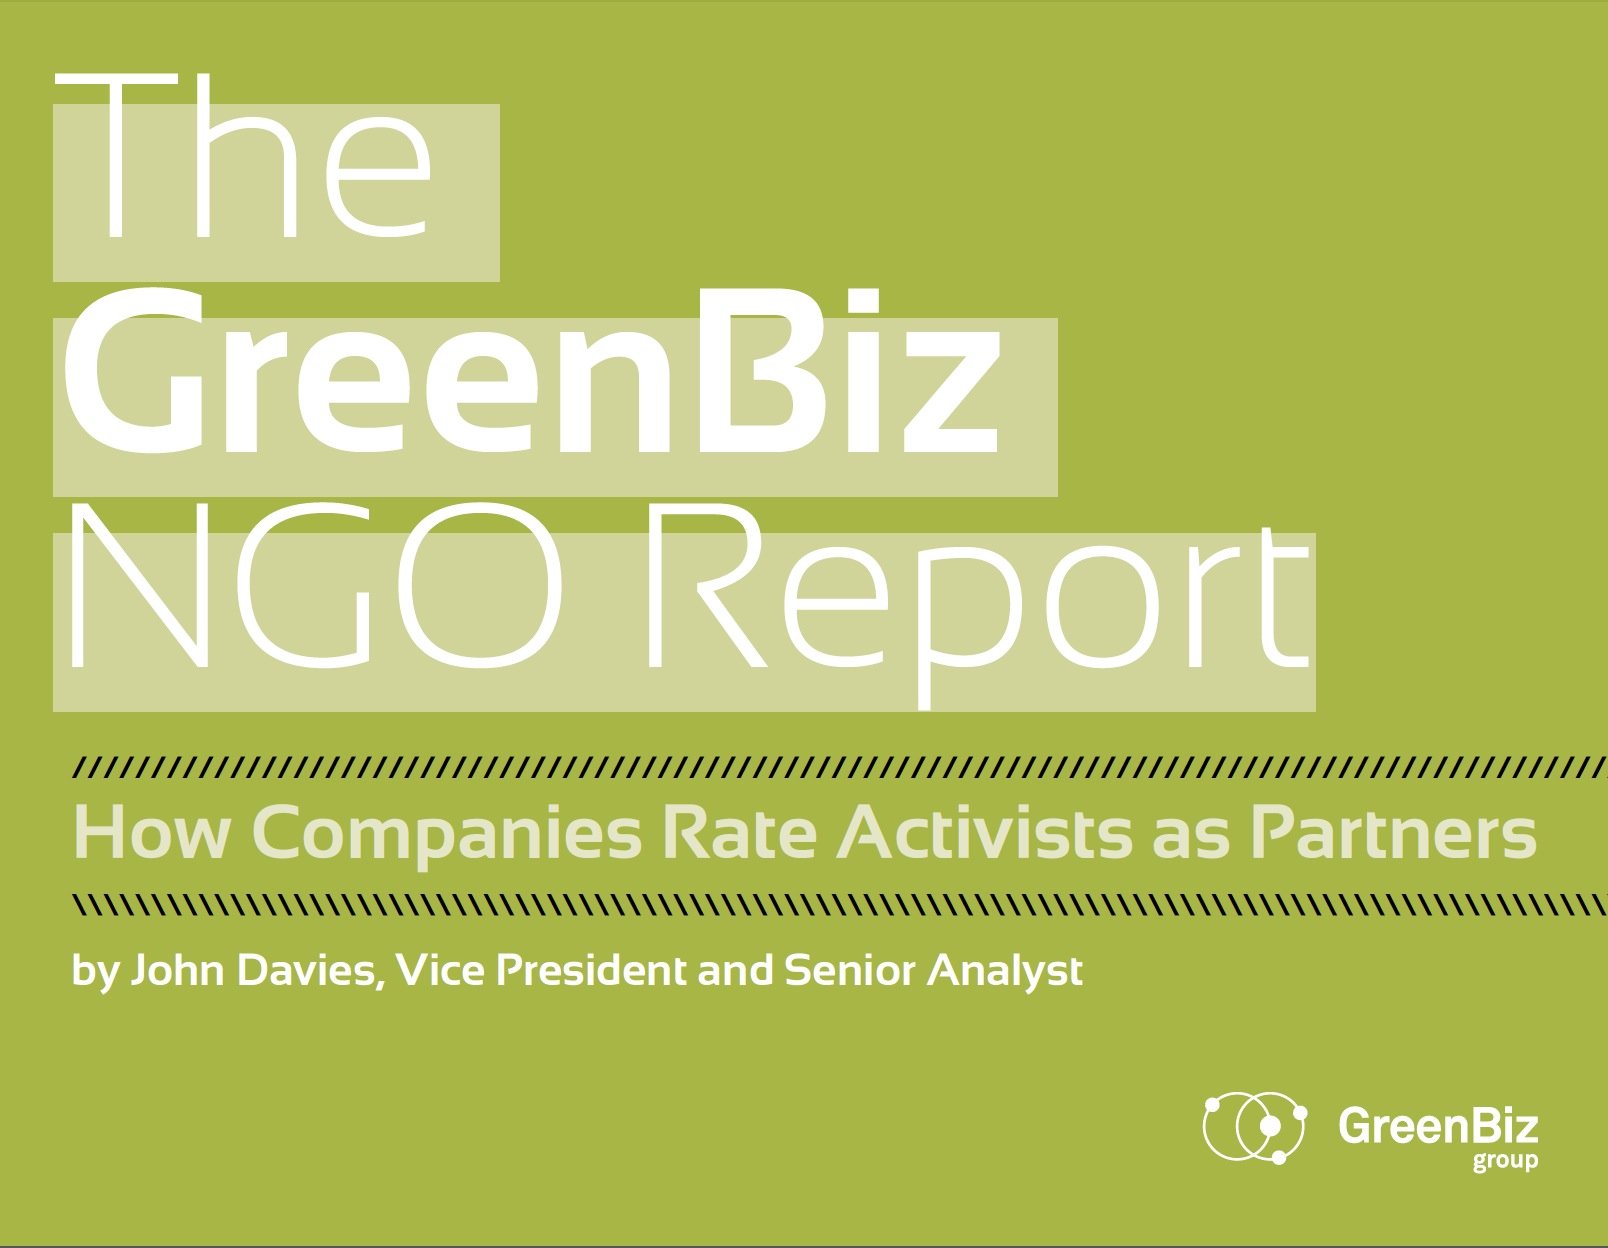 GreenBiz NGO Report